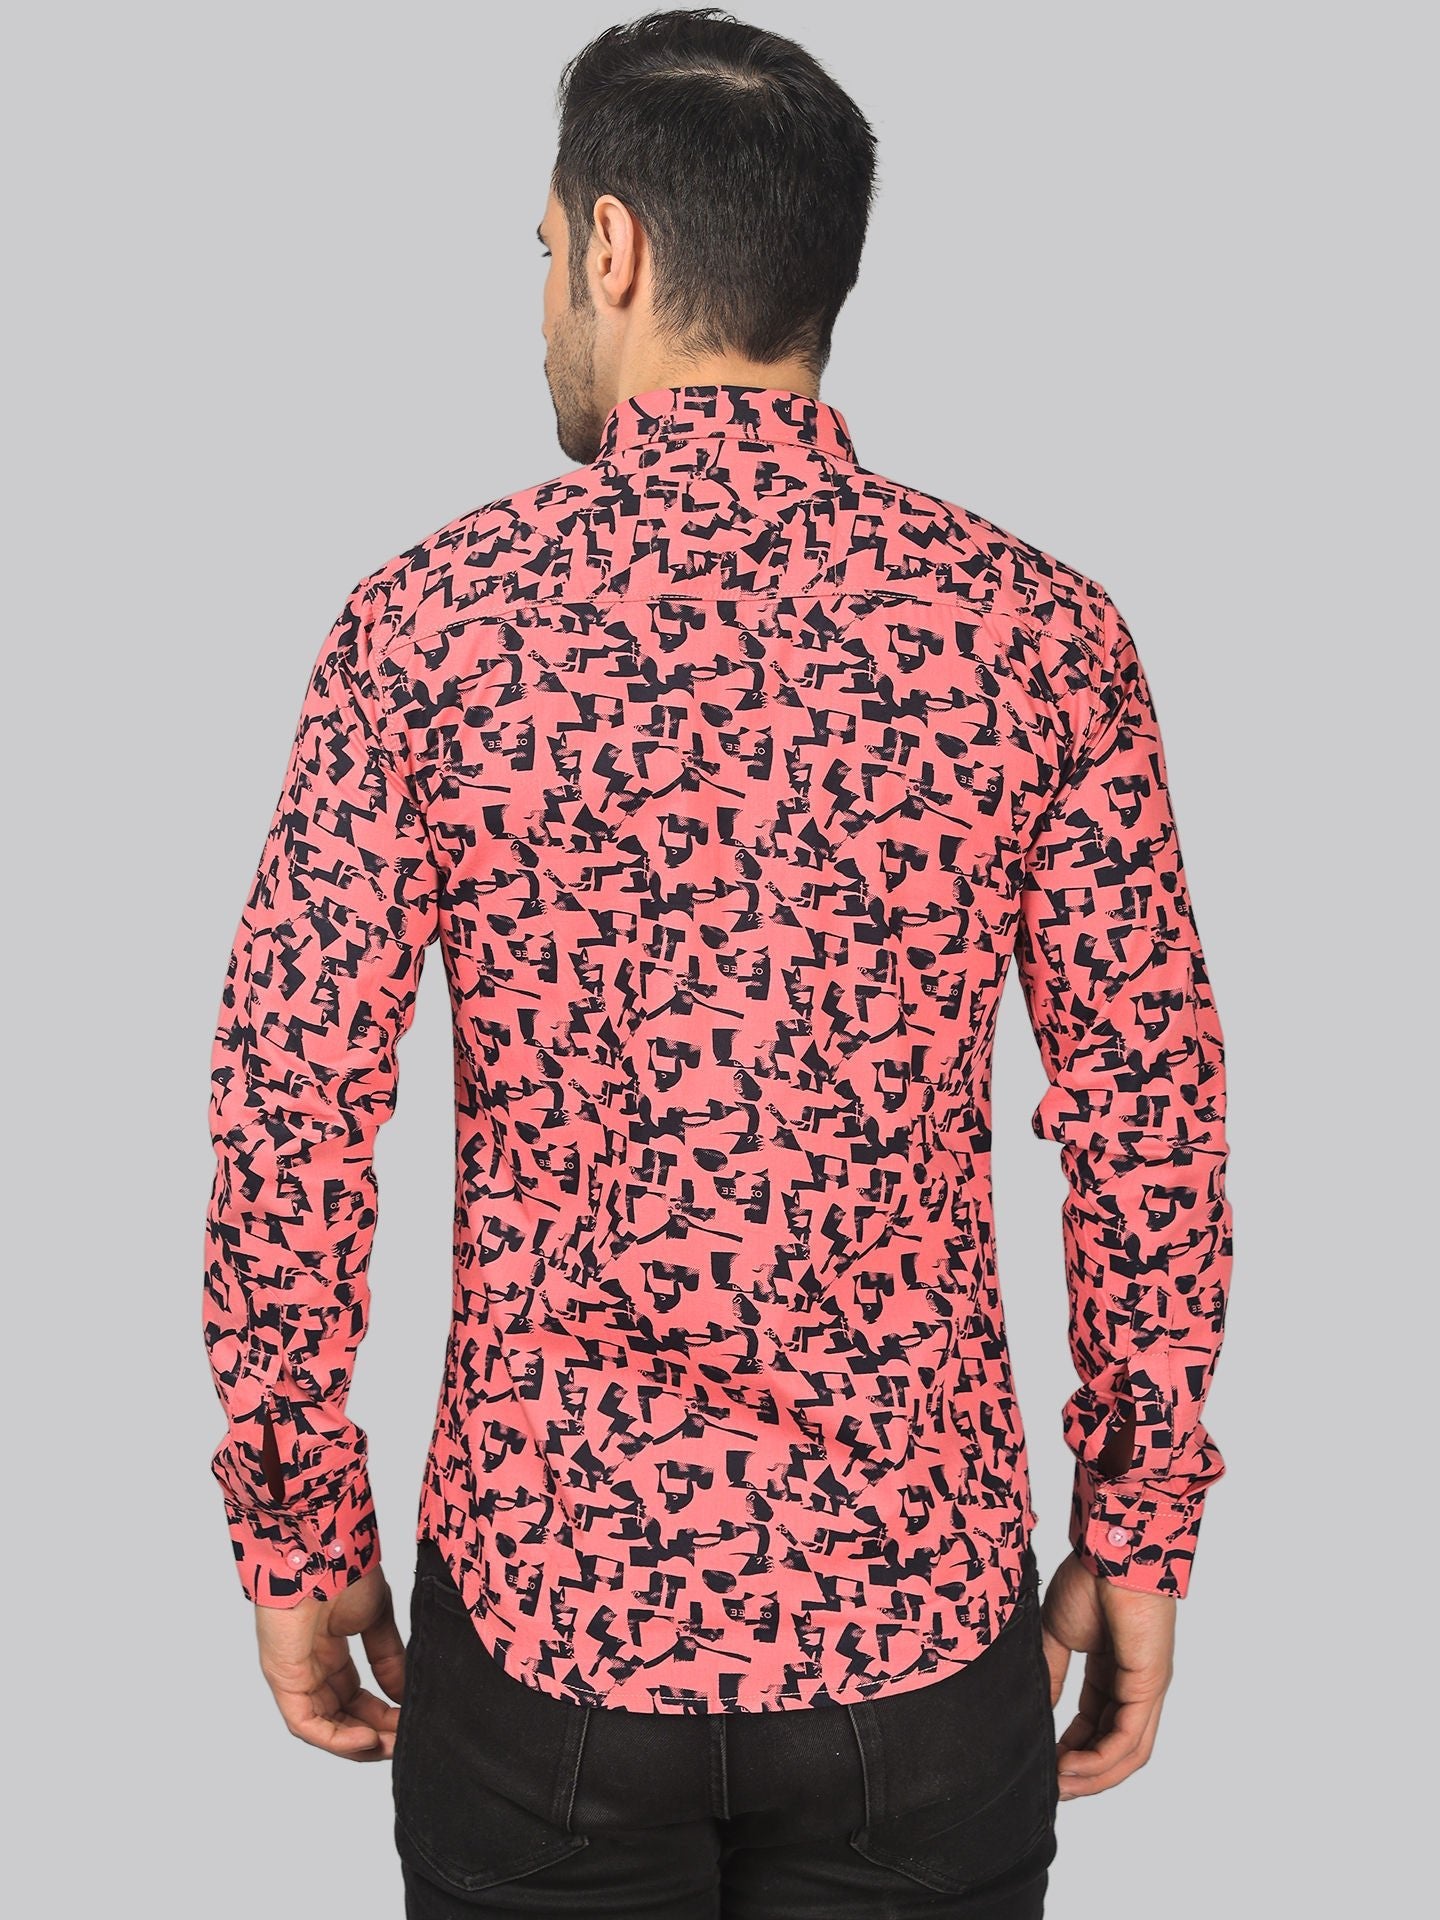 Artisanal Men's Printed Full Sleeve Casual Linen Shirt - TryBuy® USA🇺🇸